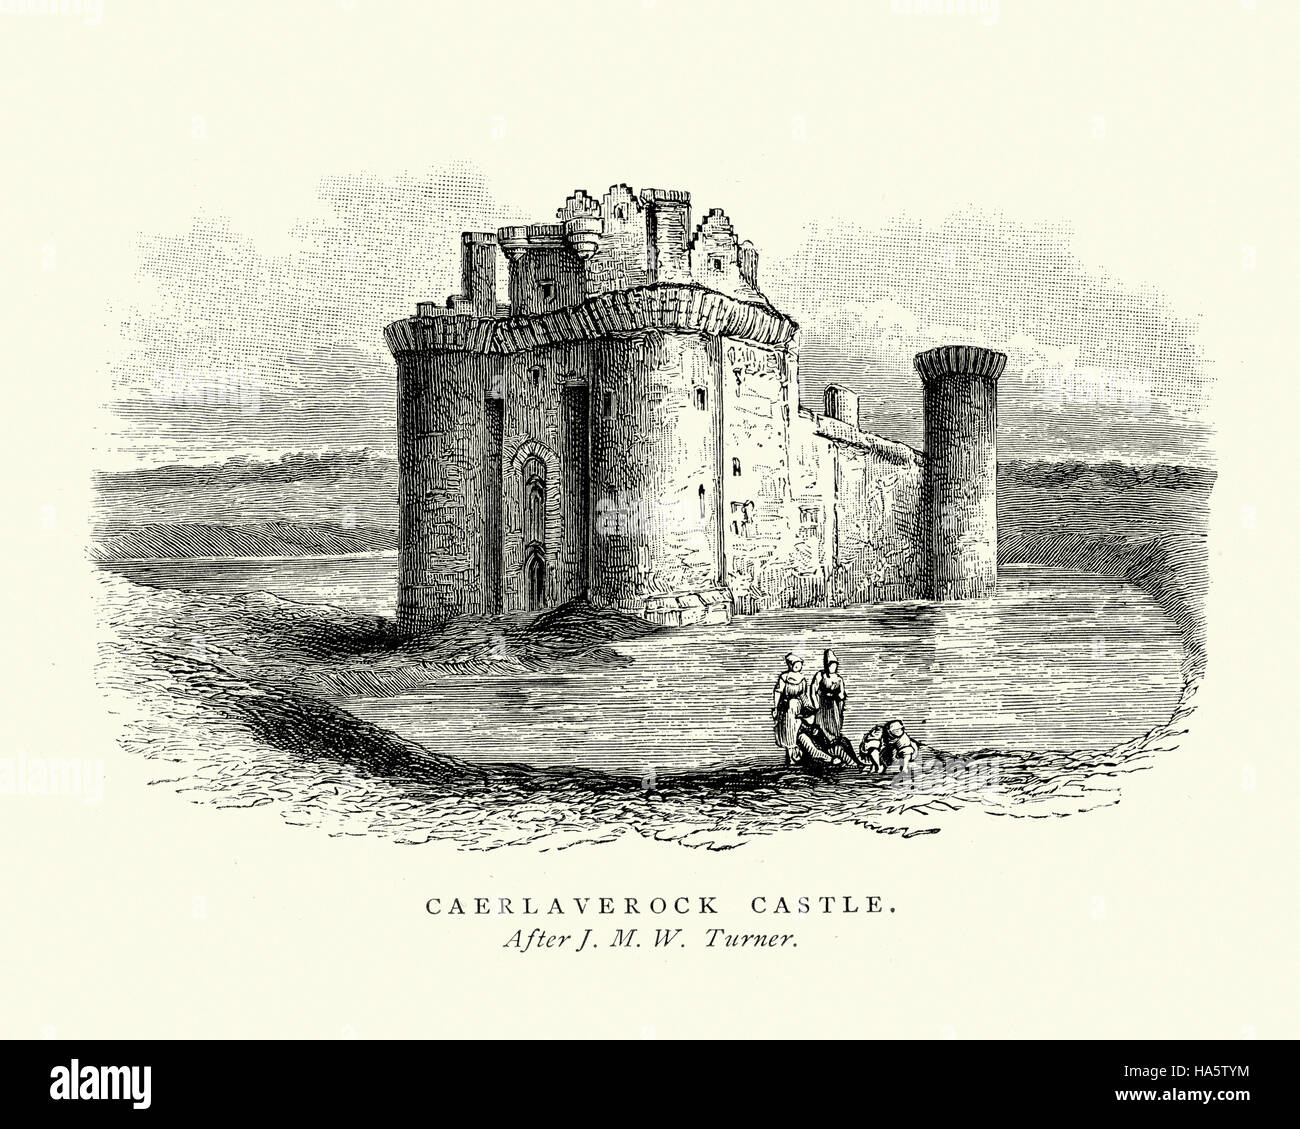 Caerlaverock Castle eine dreieckige Wasserburg erstmals im 13. Jahrhundert errichtet. Es liegt an der südlichen Küste von Schottland, südlich von Dumfries. Stockfoto